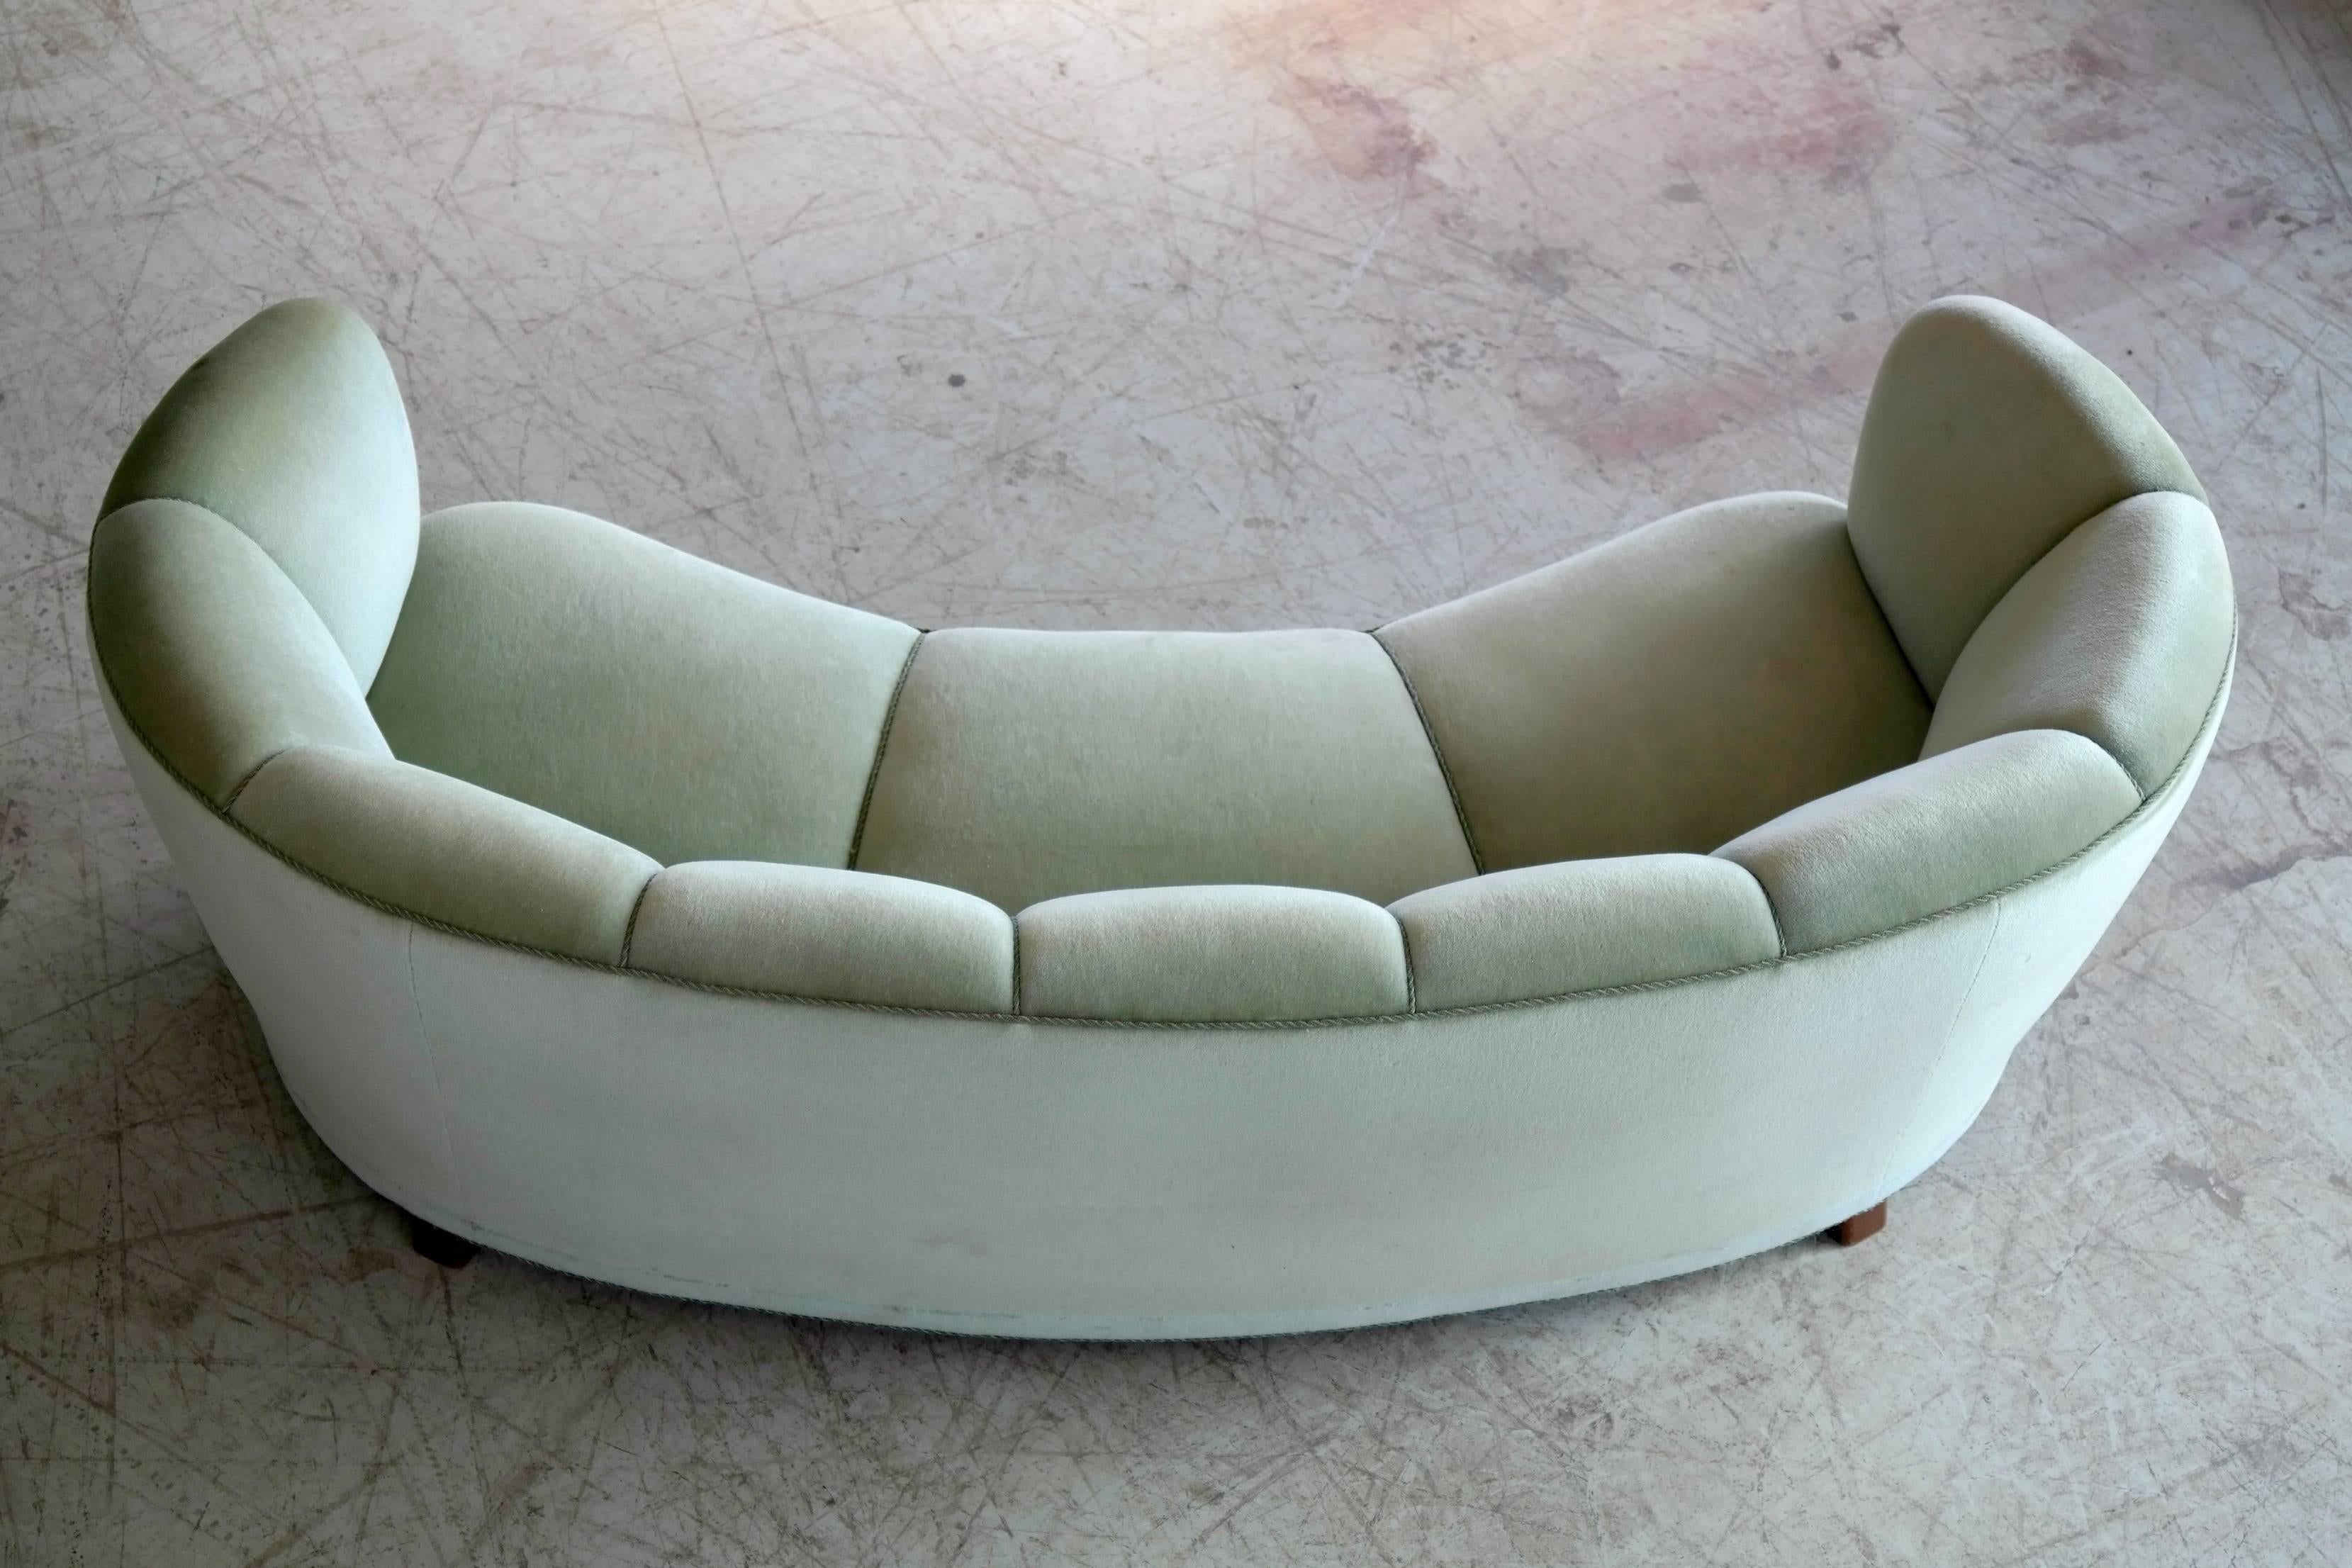 Danish Banana Form or Curved Sofa by Slagelse Mobelvaerk in the Manner of Viggo Boesen